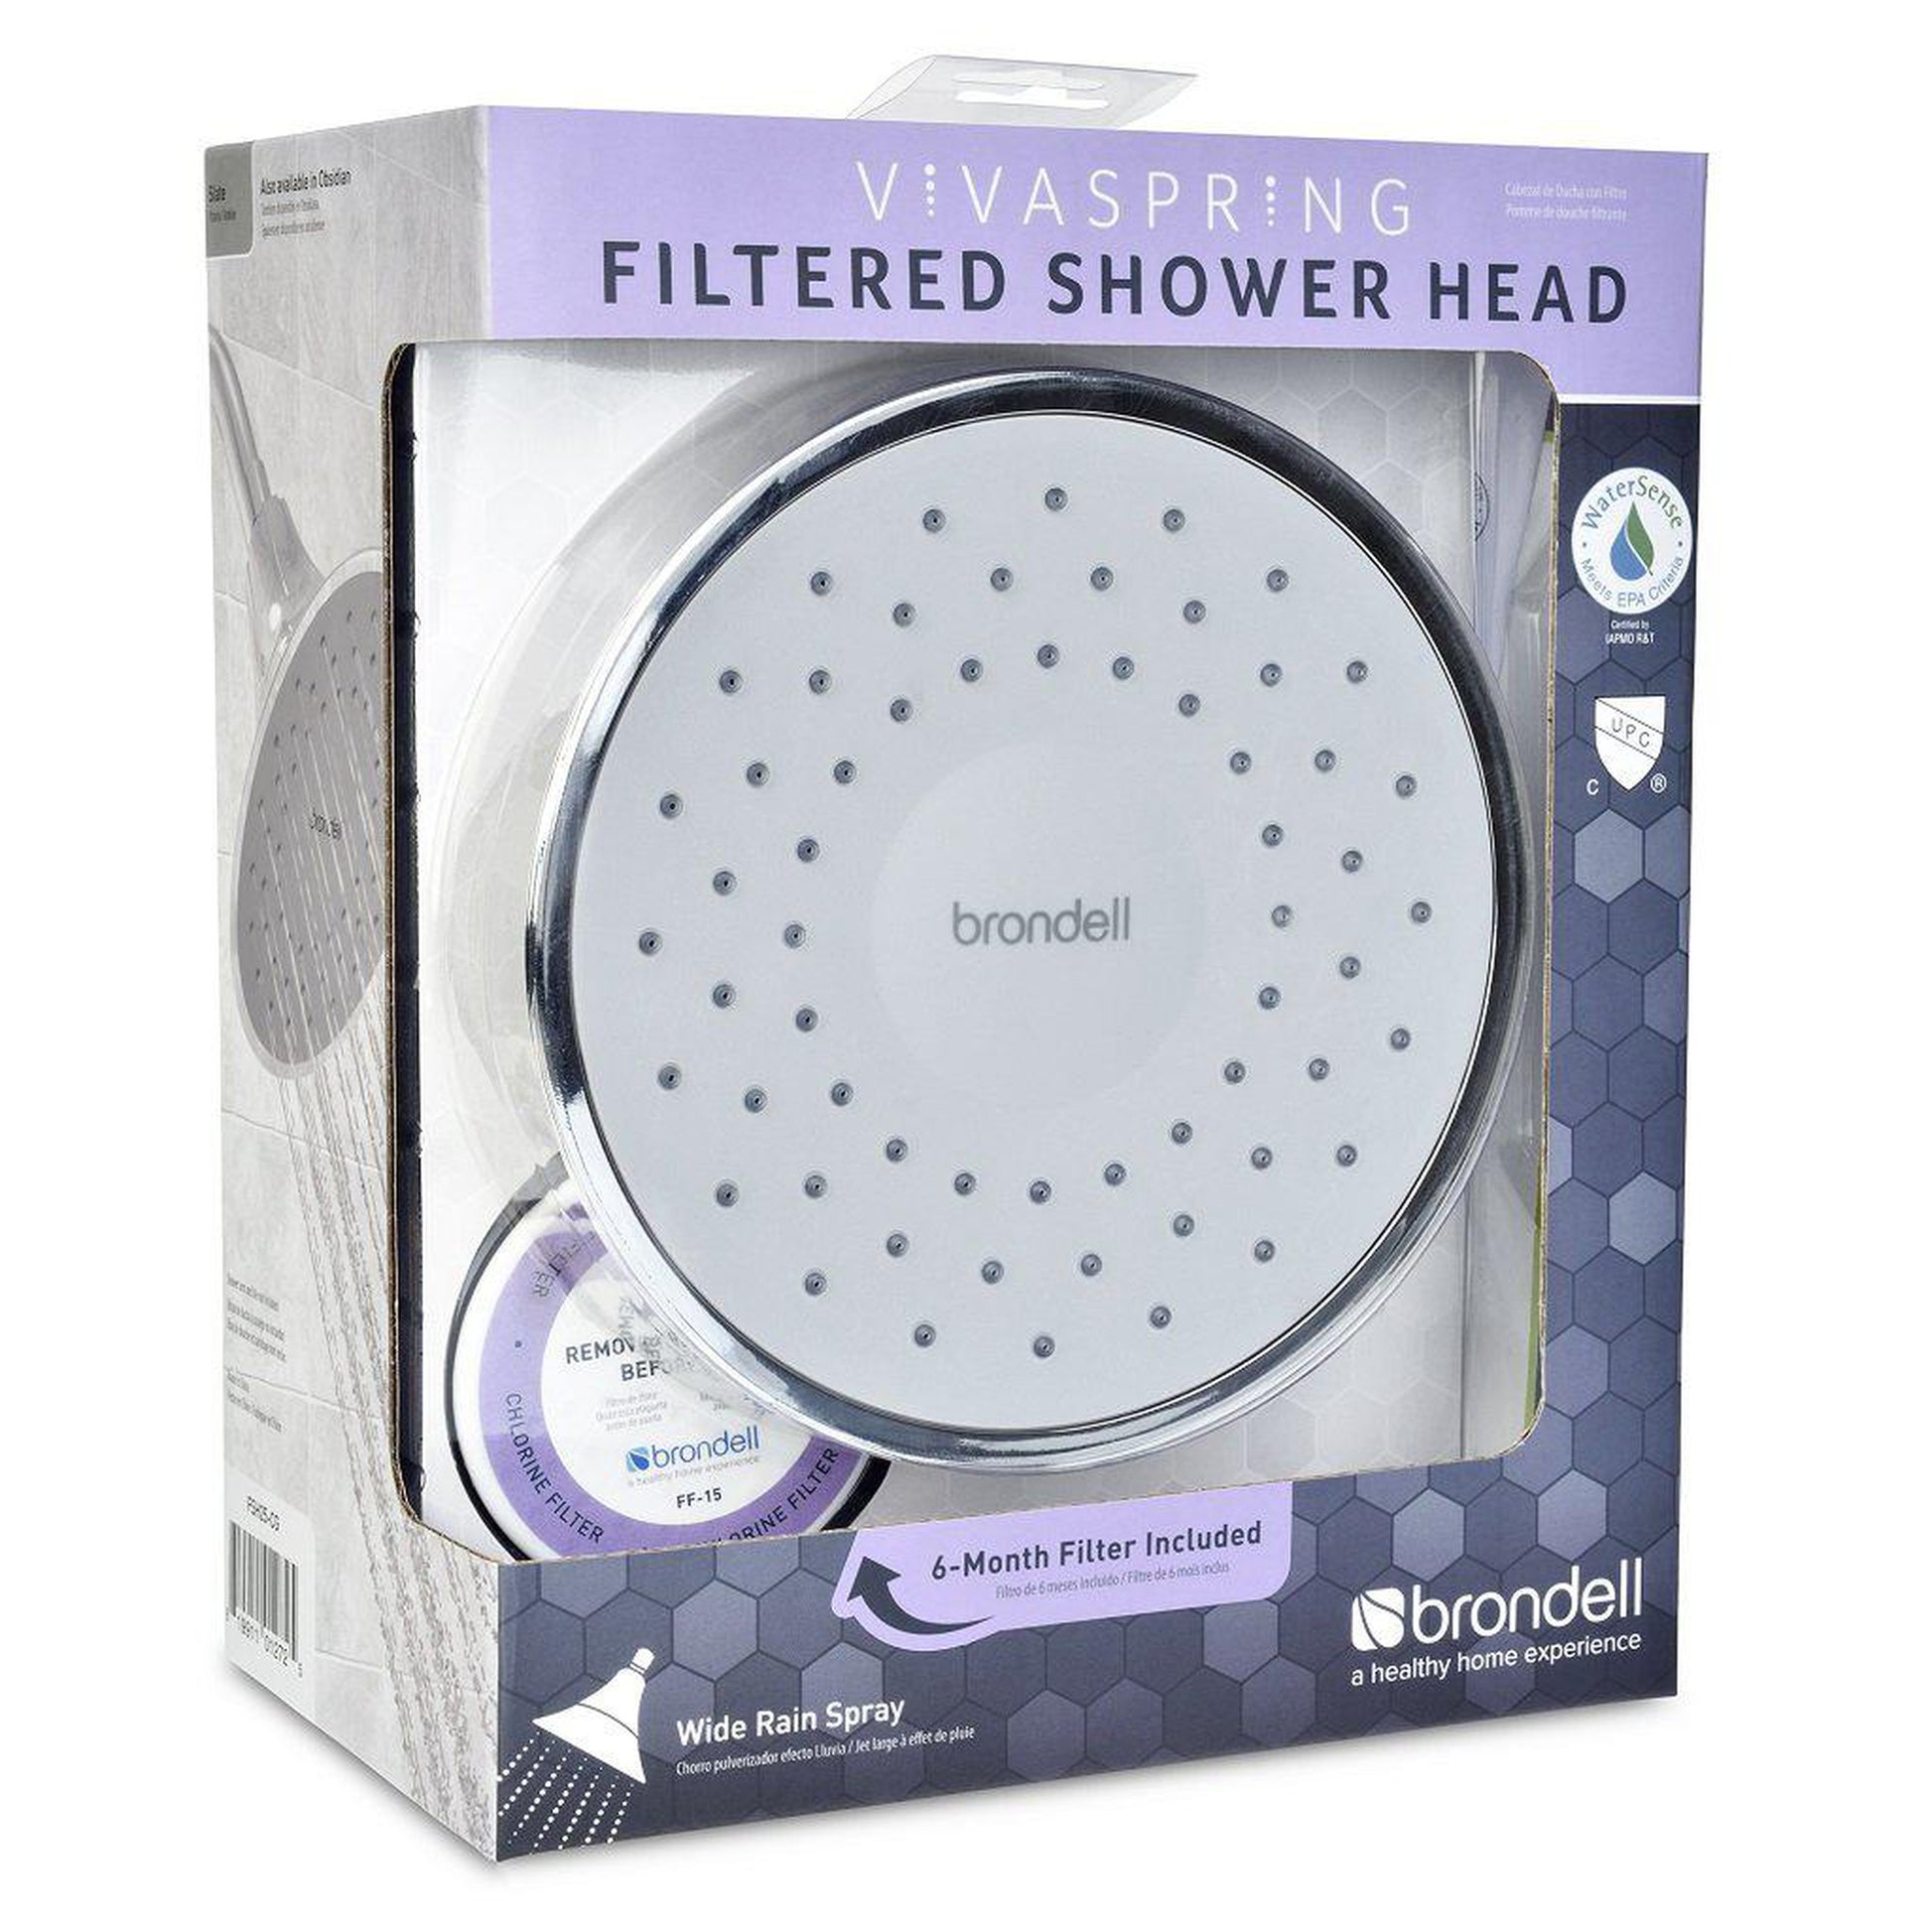 Brondell VivaSpring Chrome Slate Face Filtered Showerhead